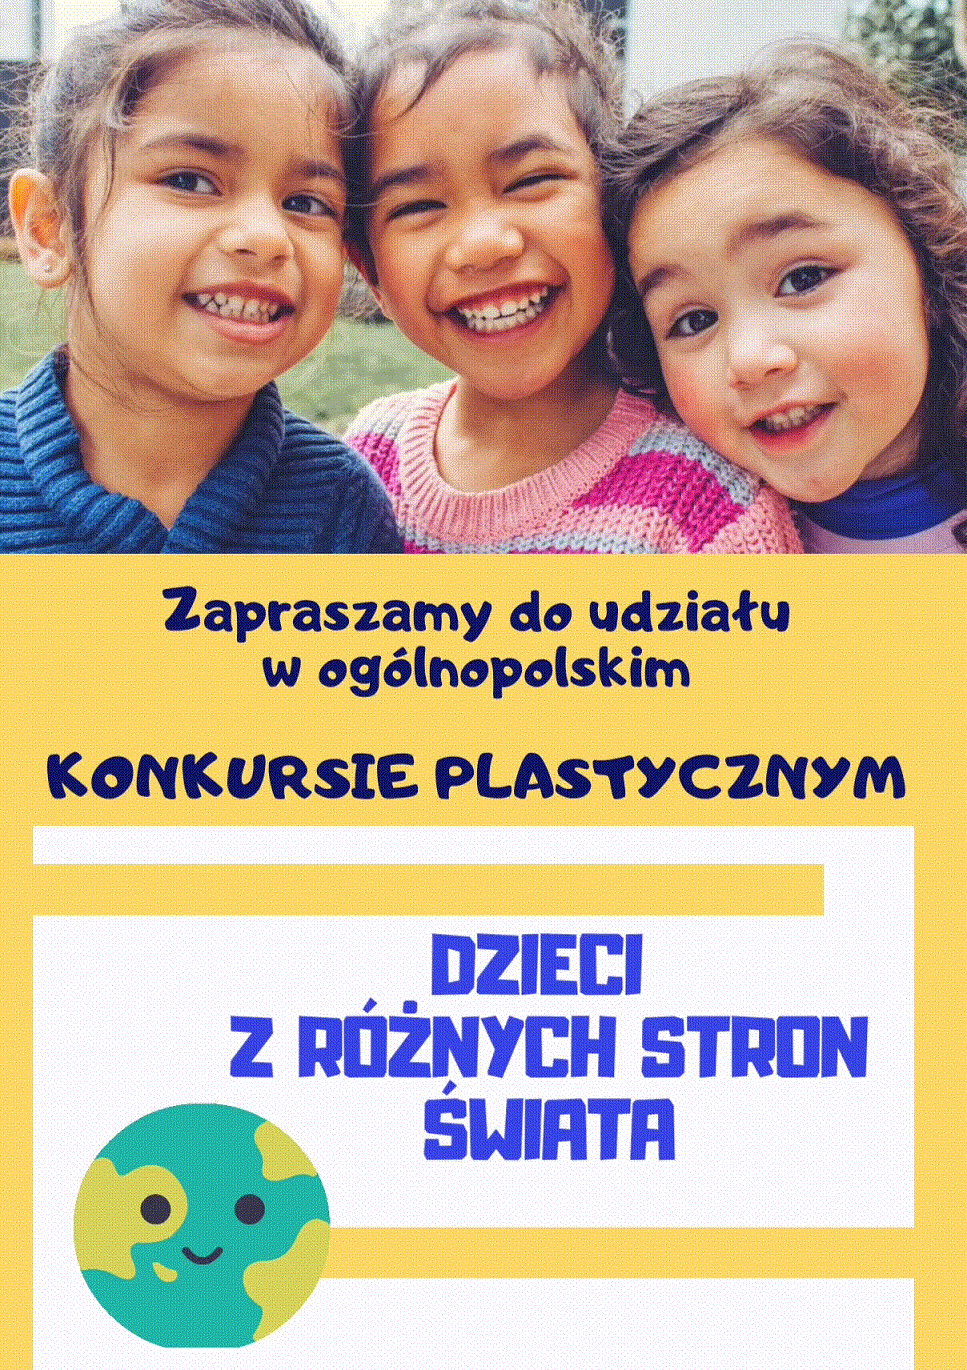 Ogólnopolski konkurs plastyczny: Dzieci z różnych stron świata